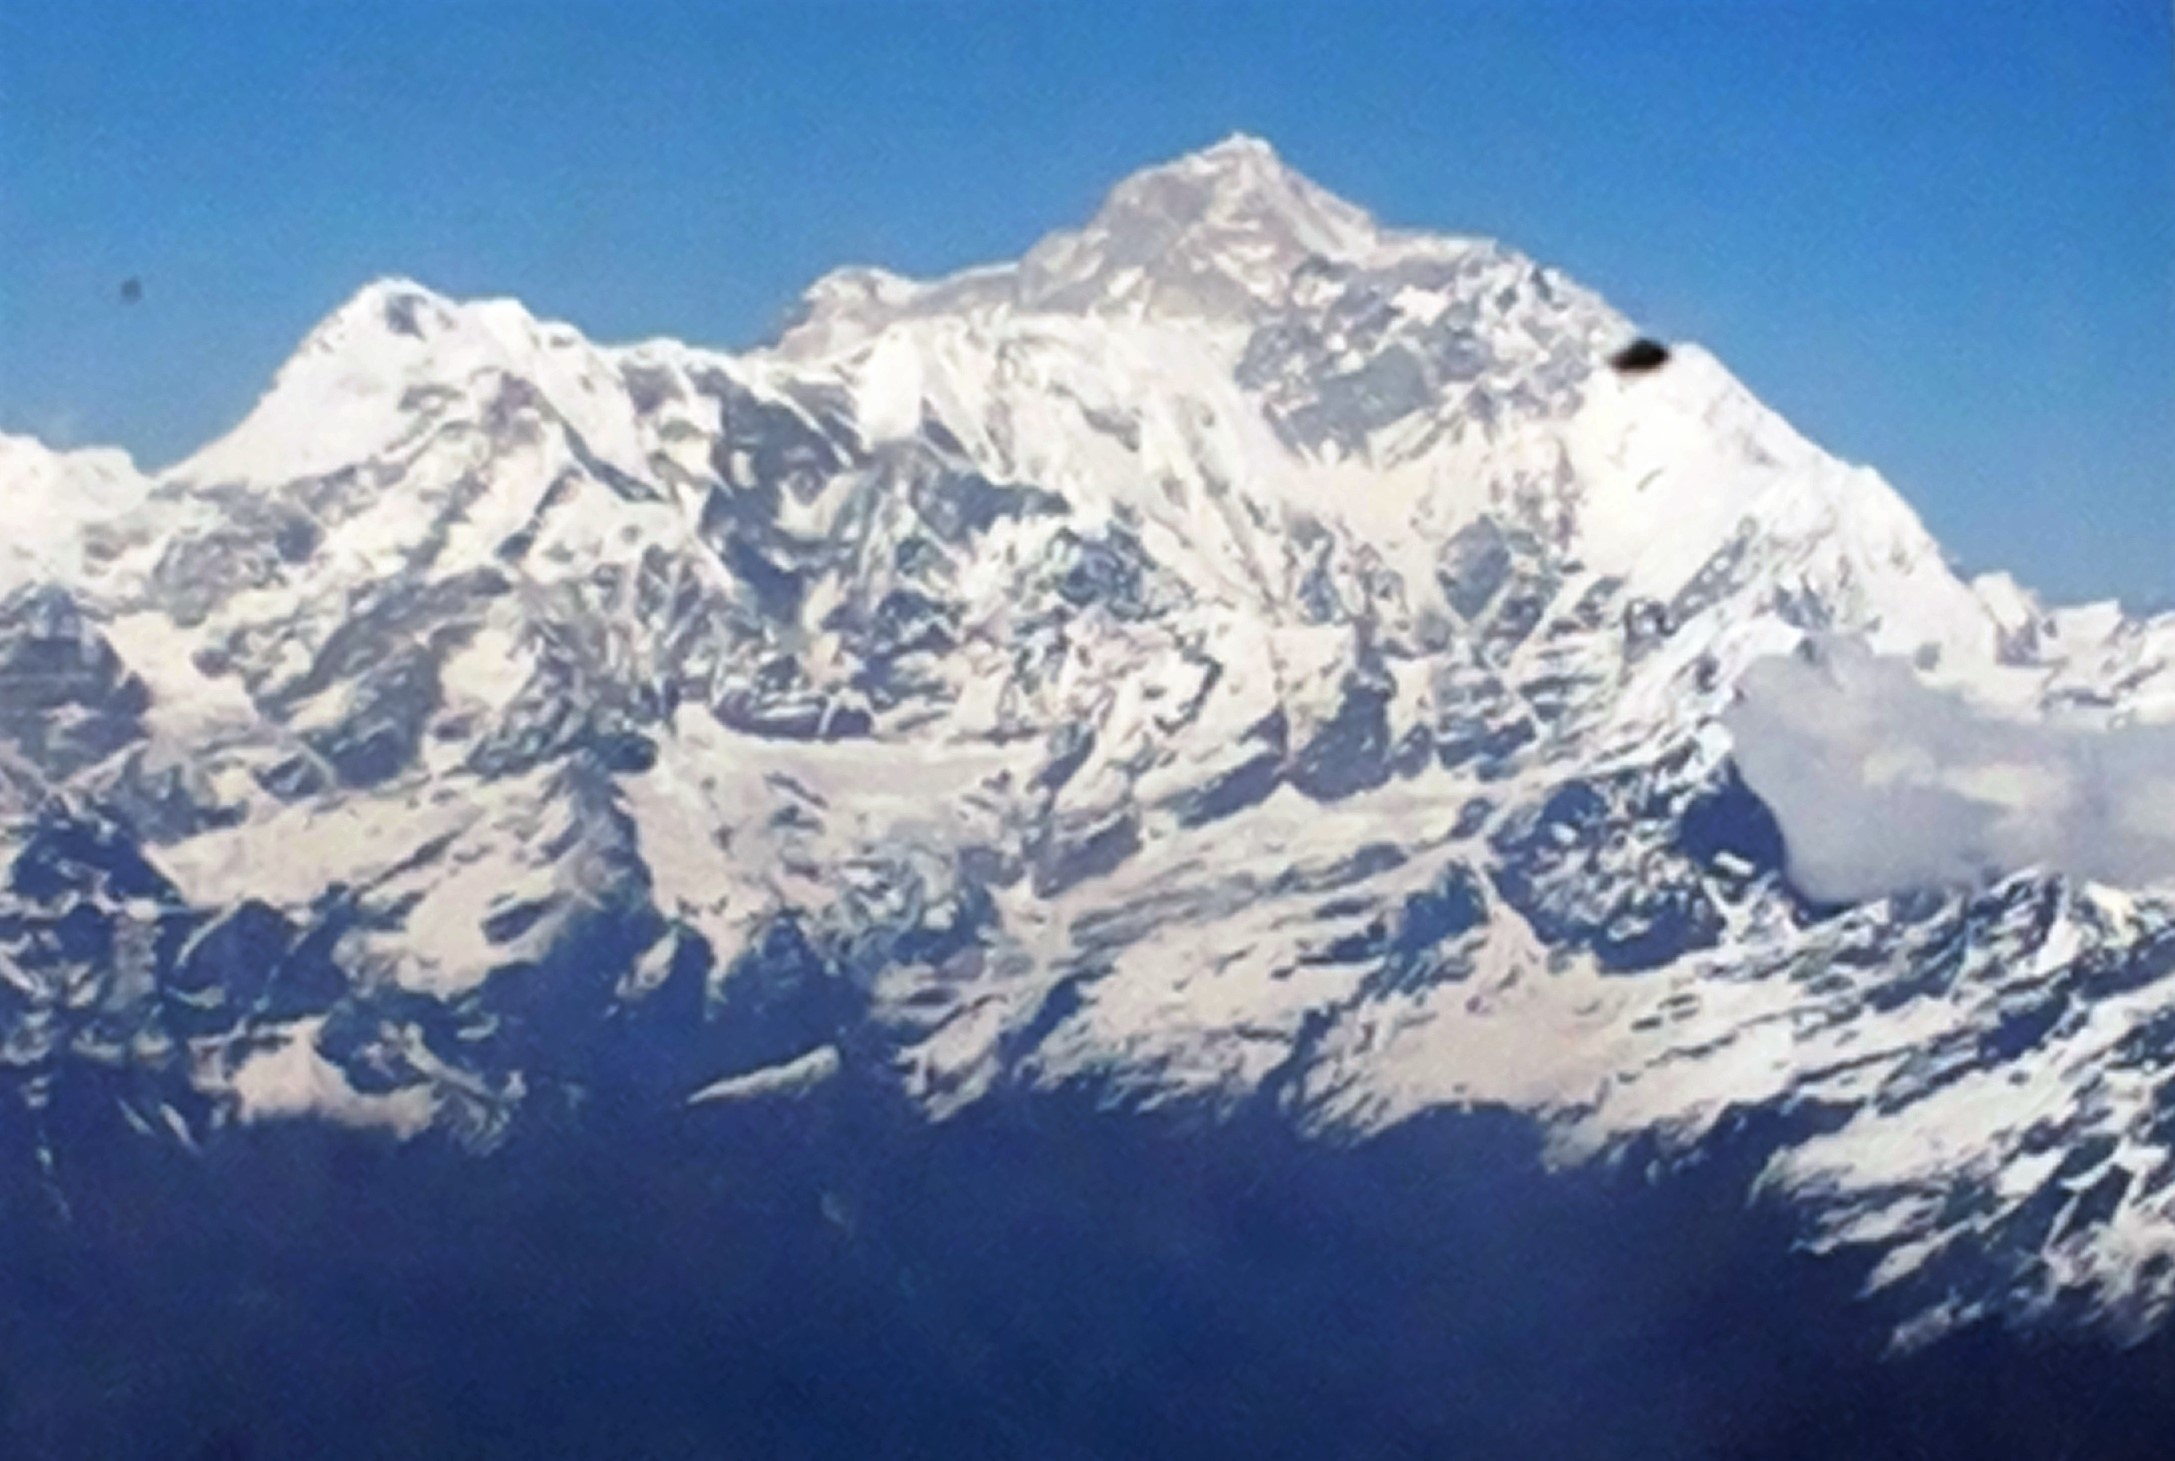 (Vista do avião para o Monte Everest. Foto: Ana Arantes)